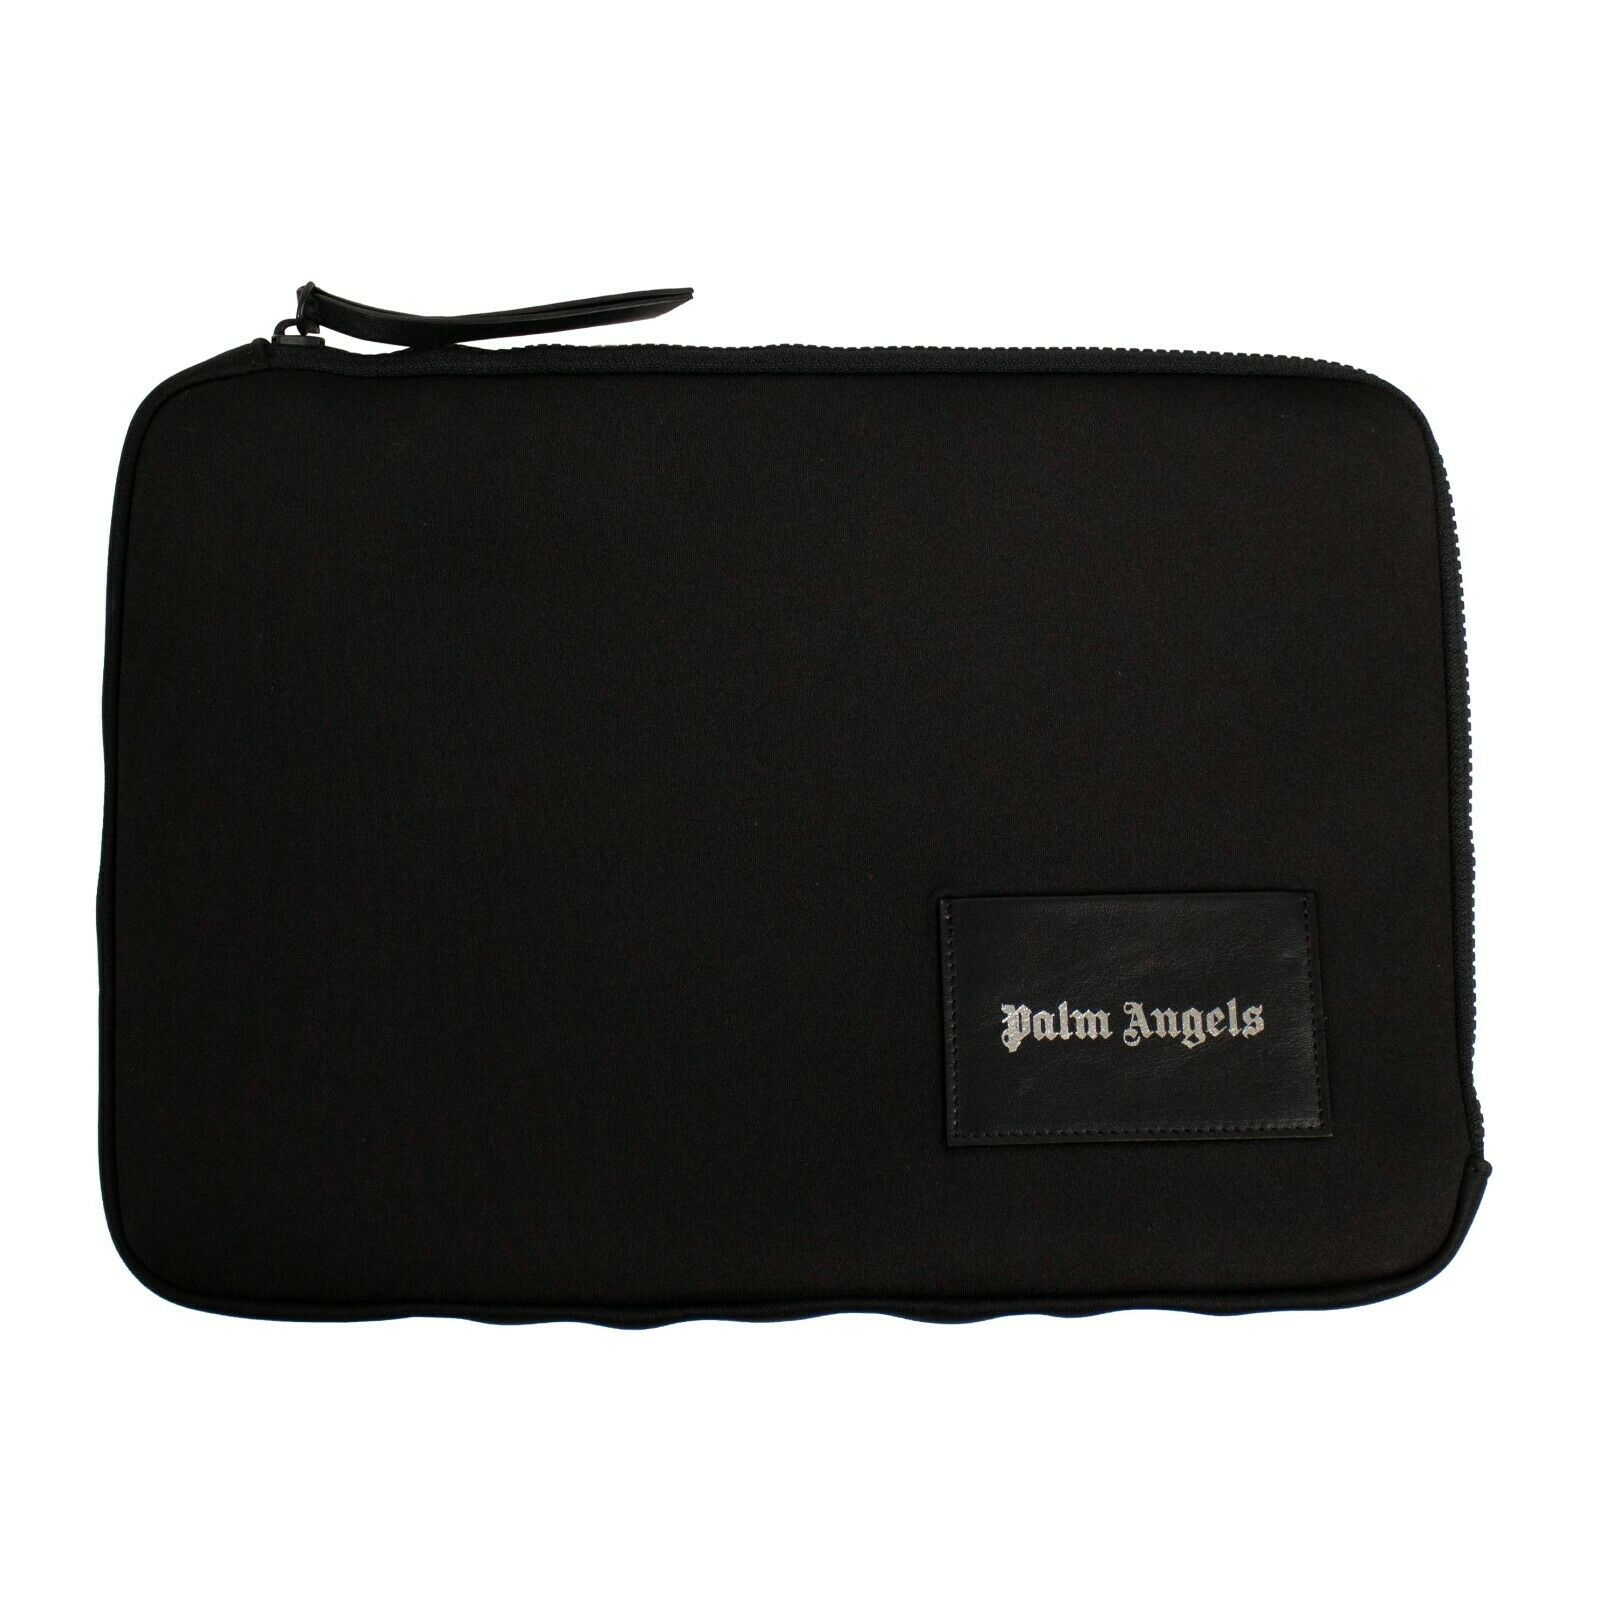 Palm Angels Logo Patch Pouch Laptop Case $560 - Black